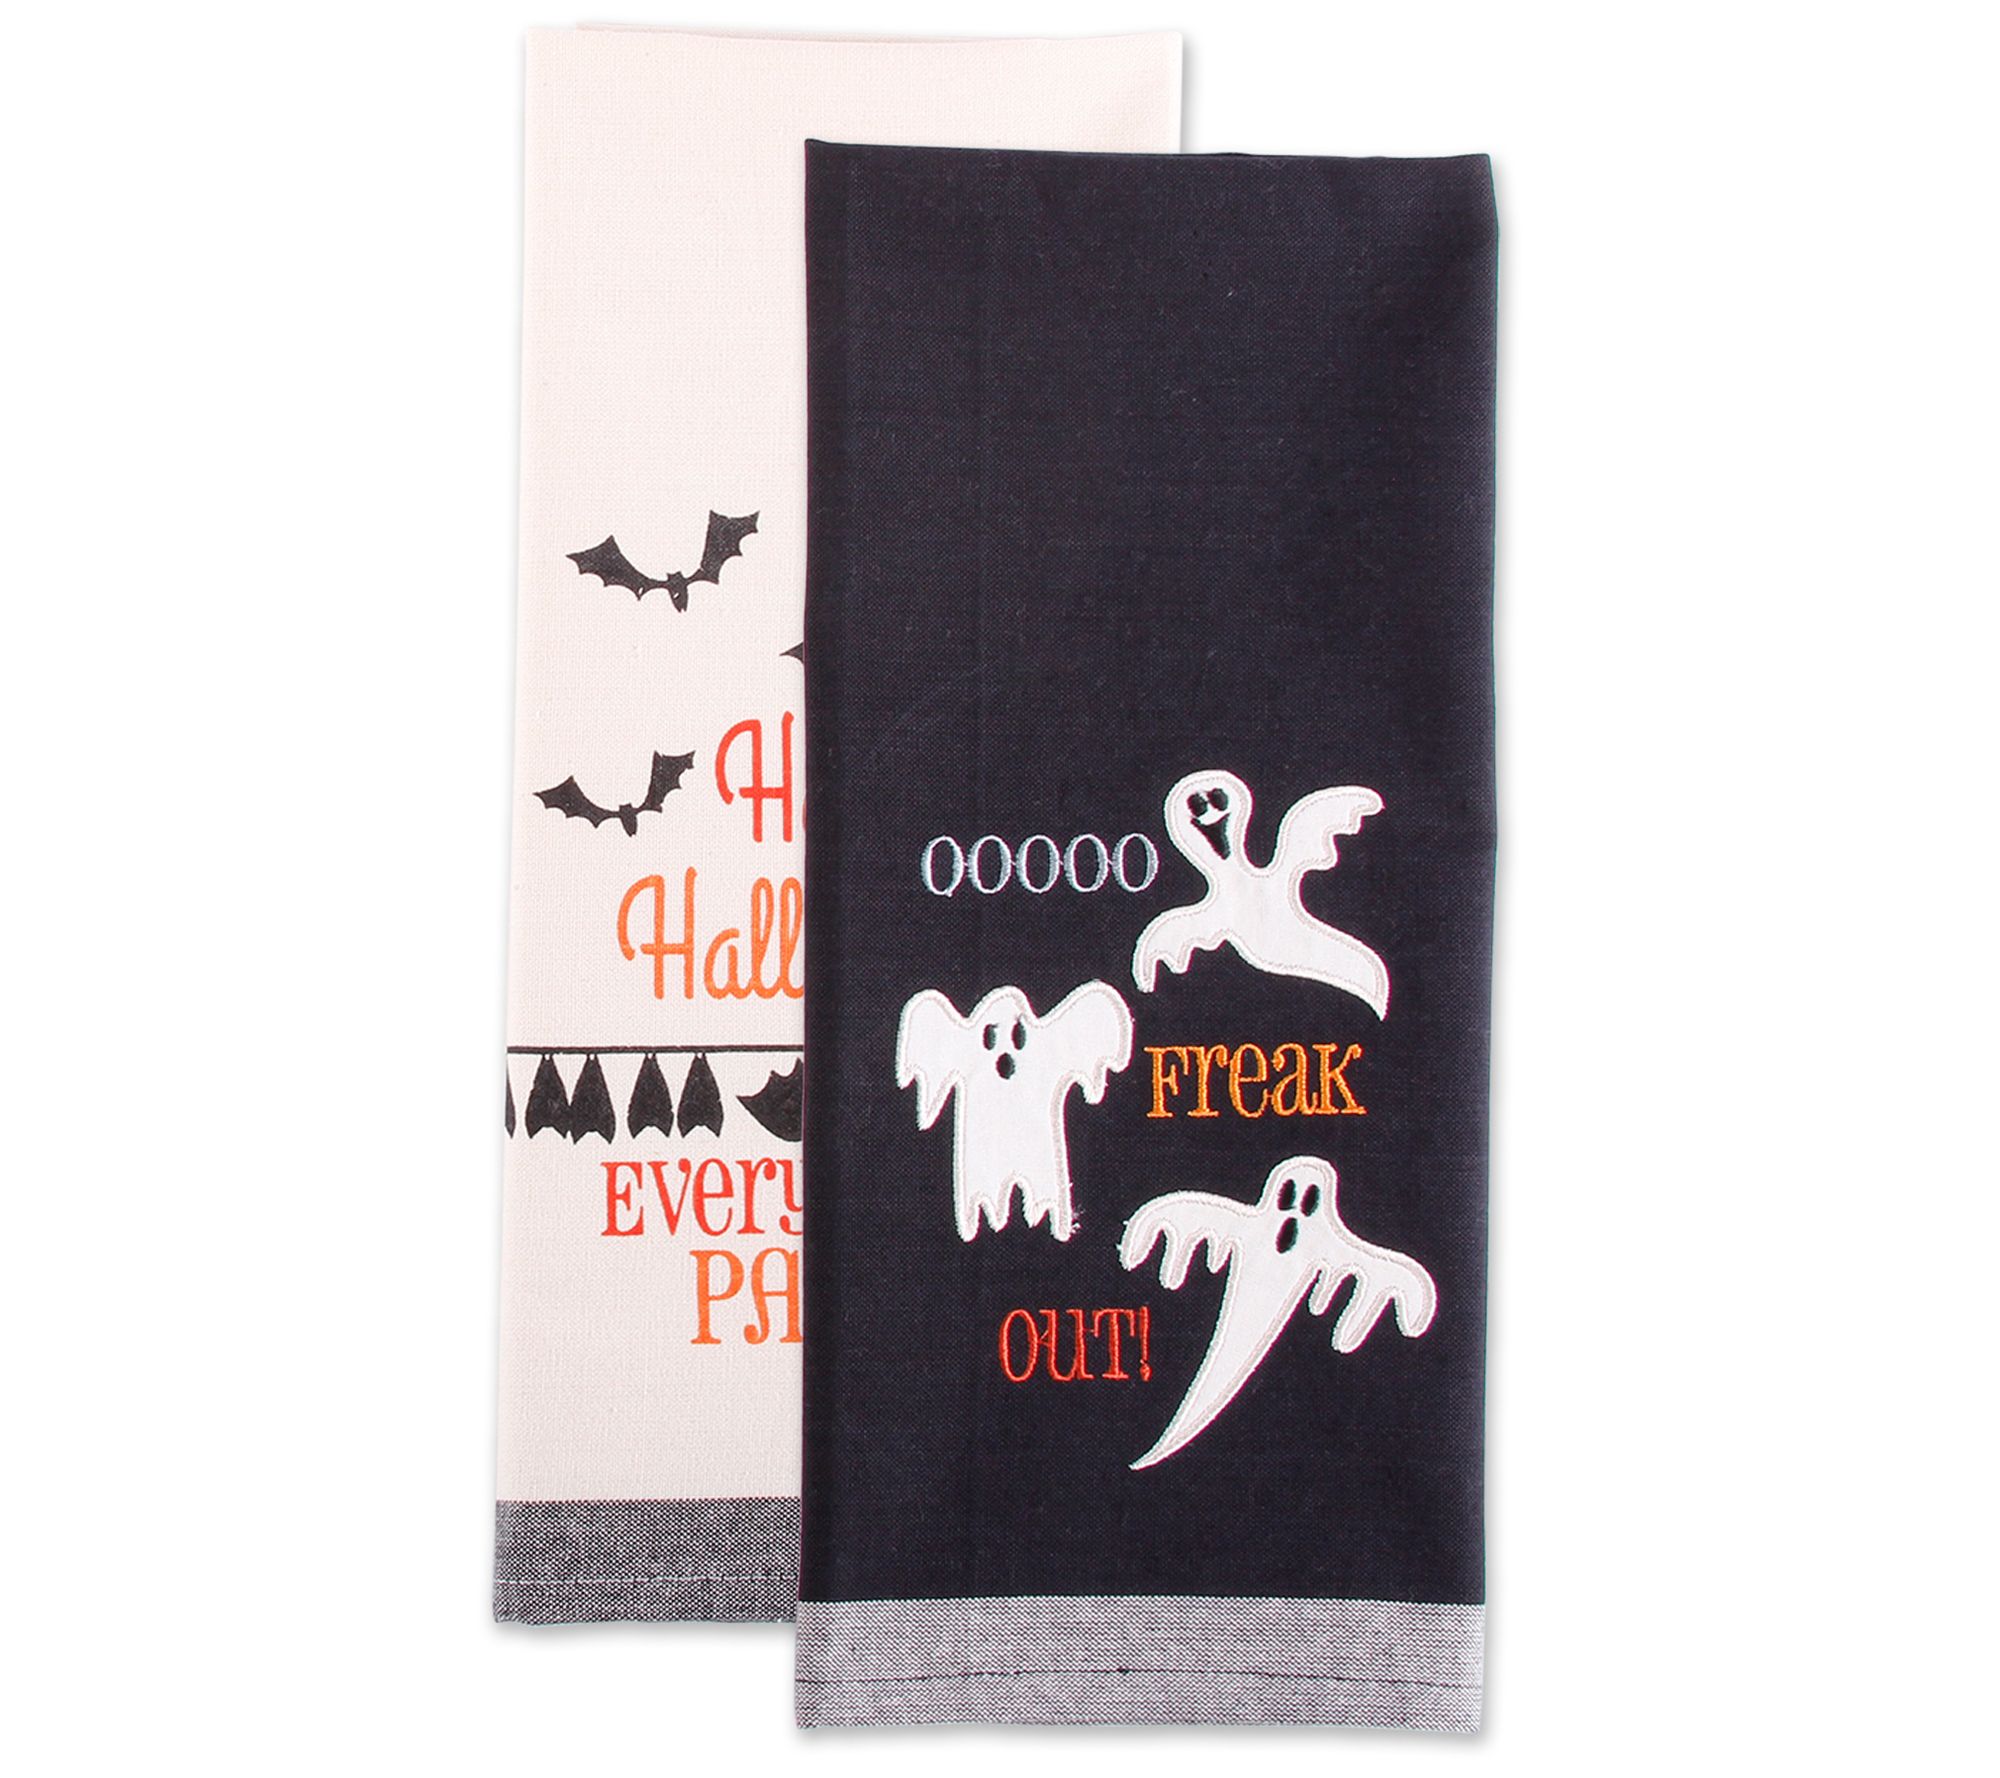 Design Imports Halloween Embellished Kitchen Towel Set of 3